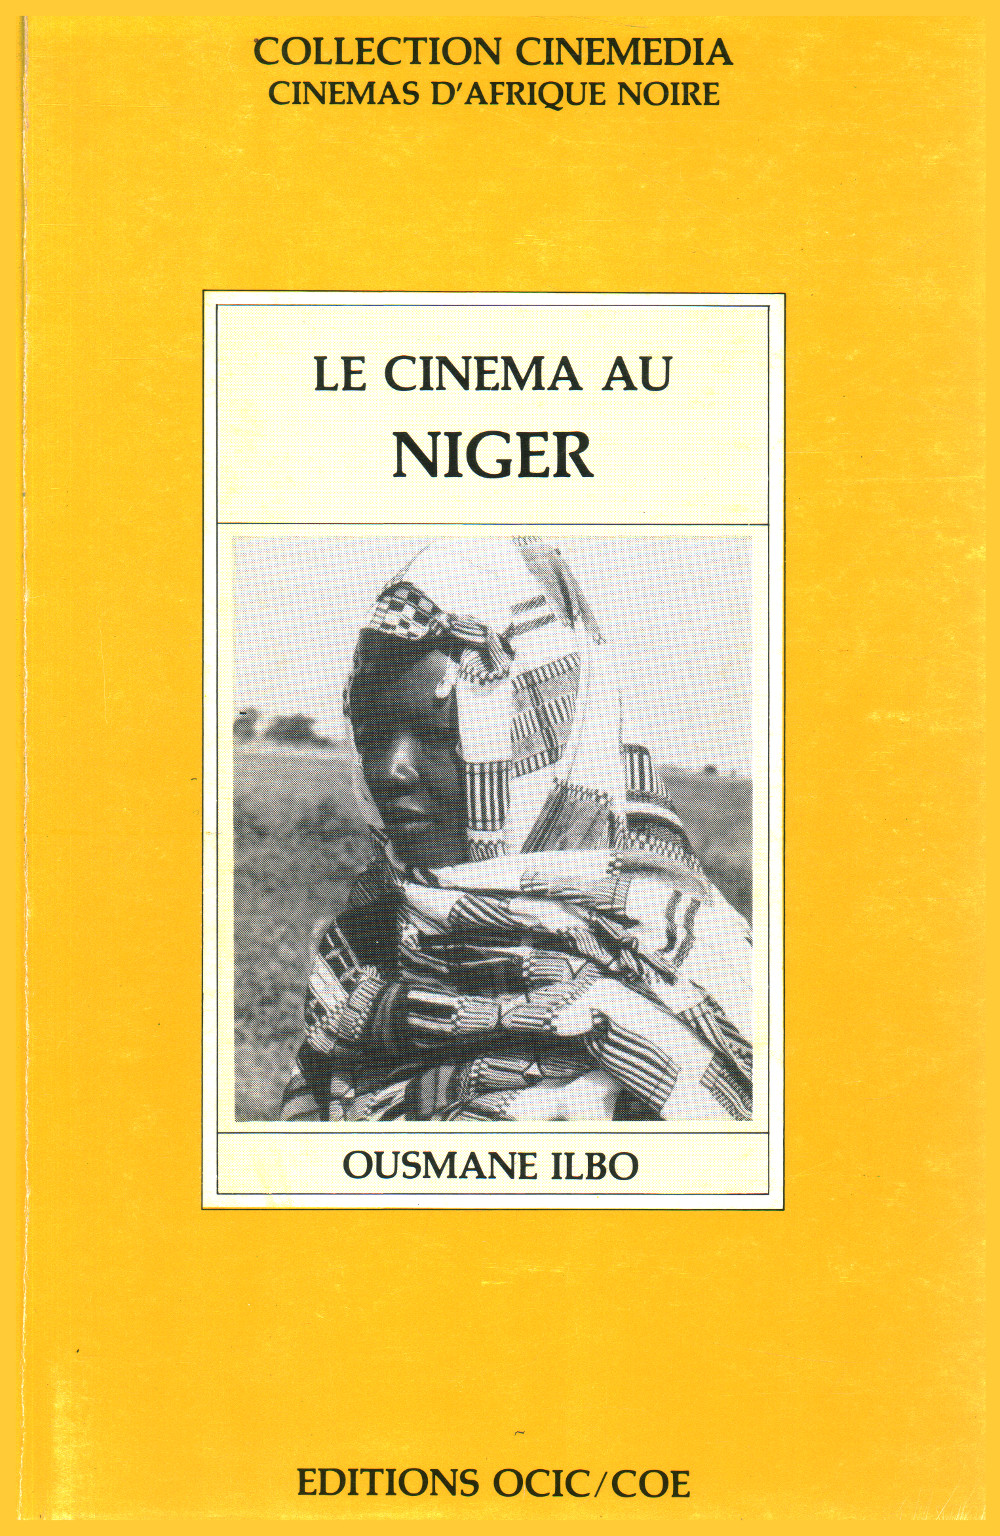 Die kino-au Niger, s.zu.